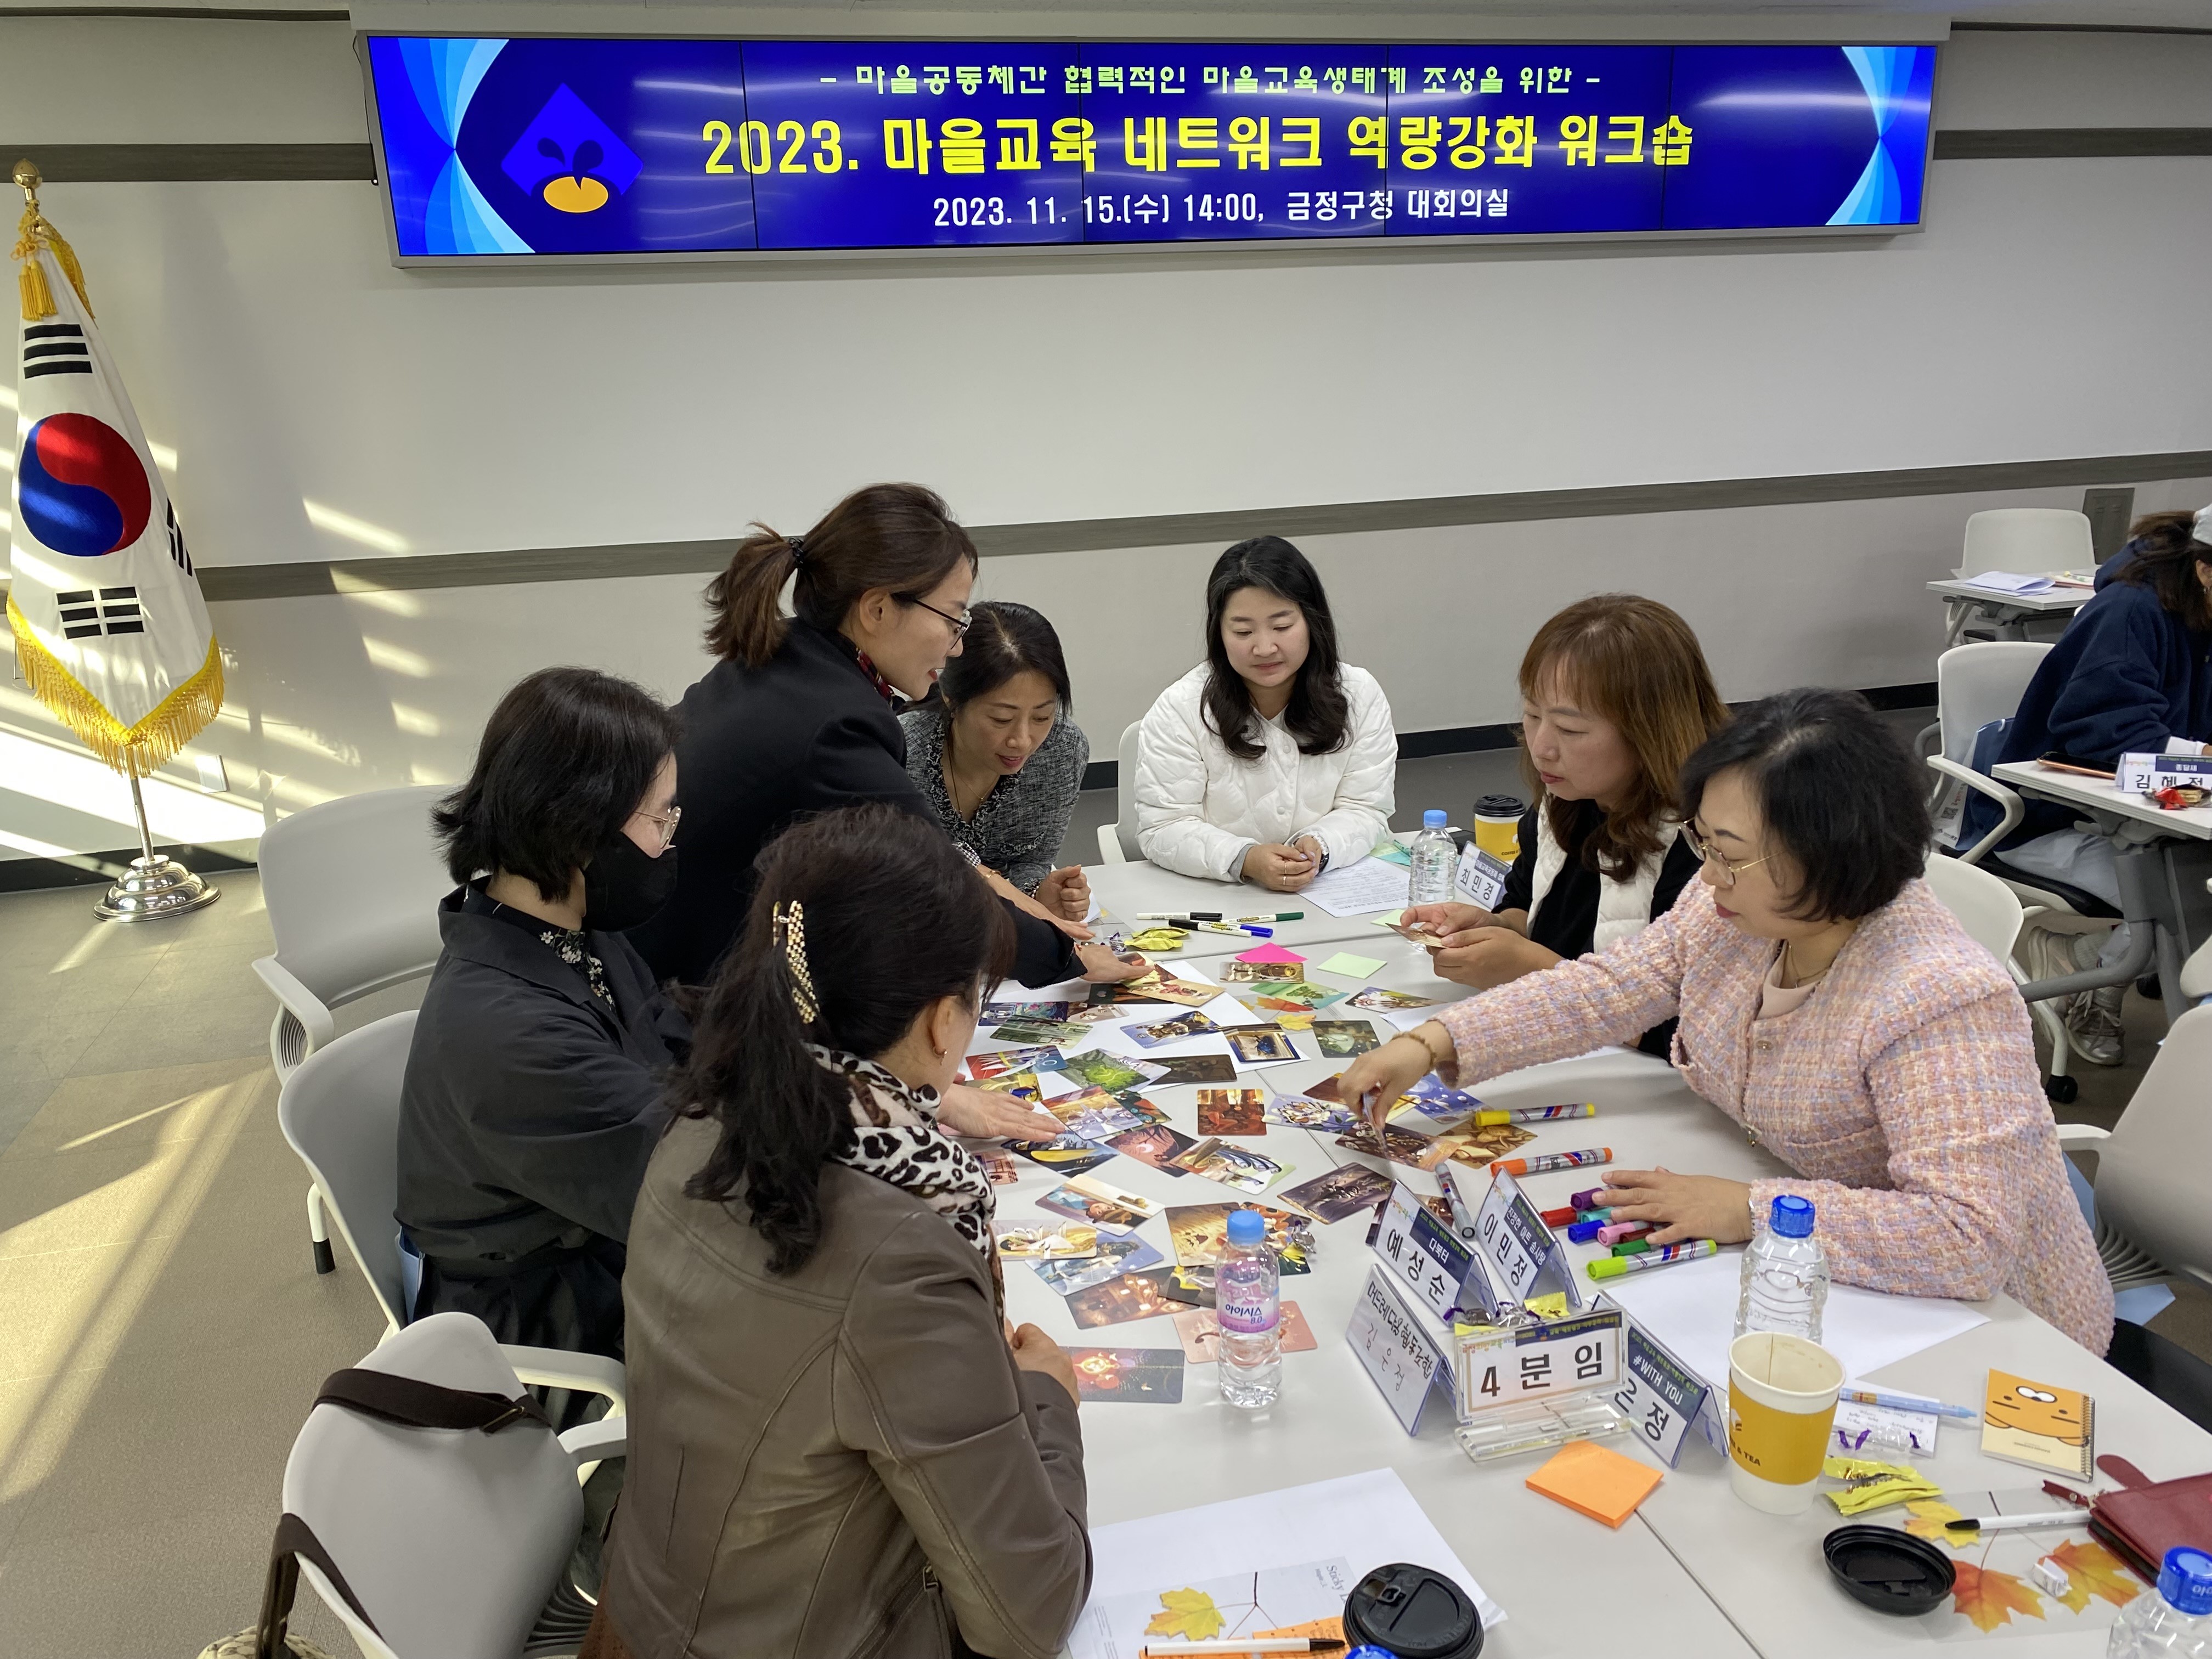 2023. 마을교육 네트워크 역량 강화 워크숍 개최(3) 6